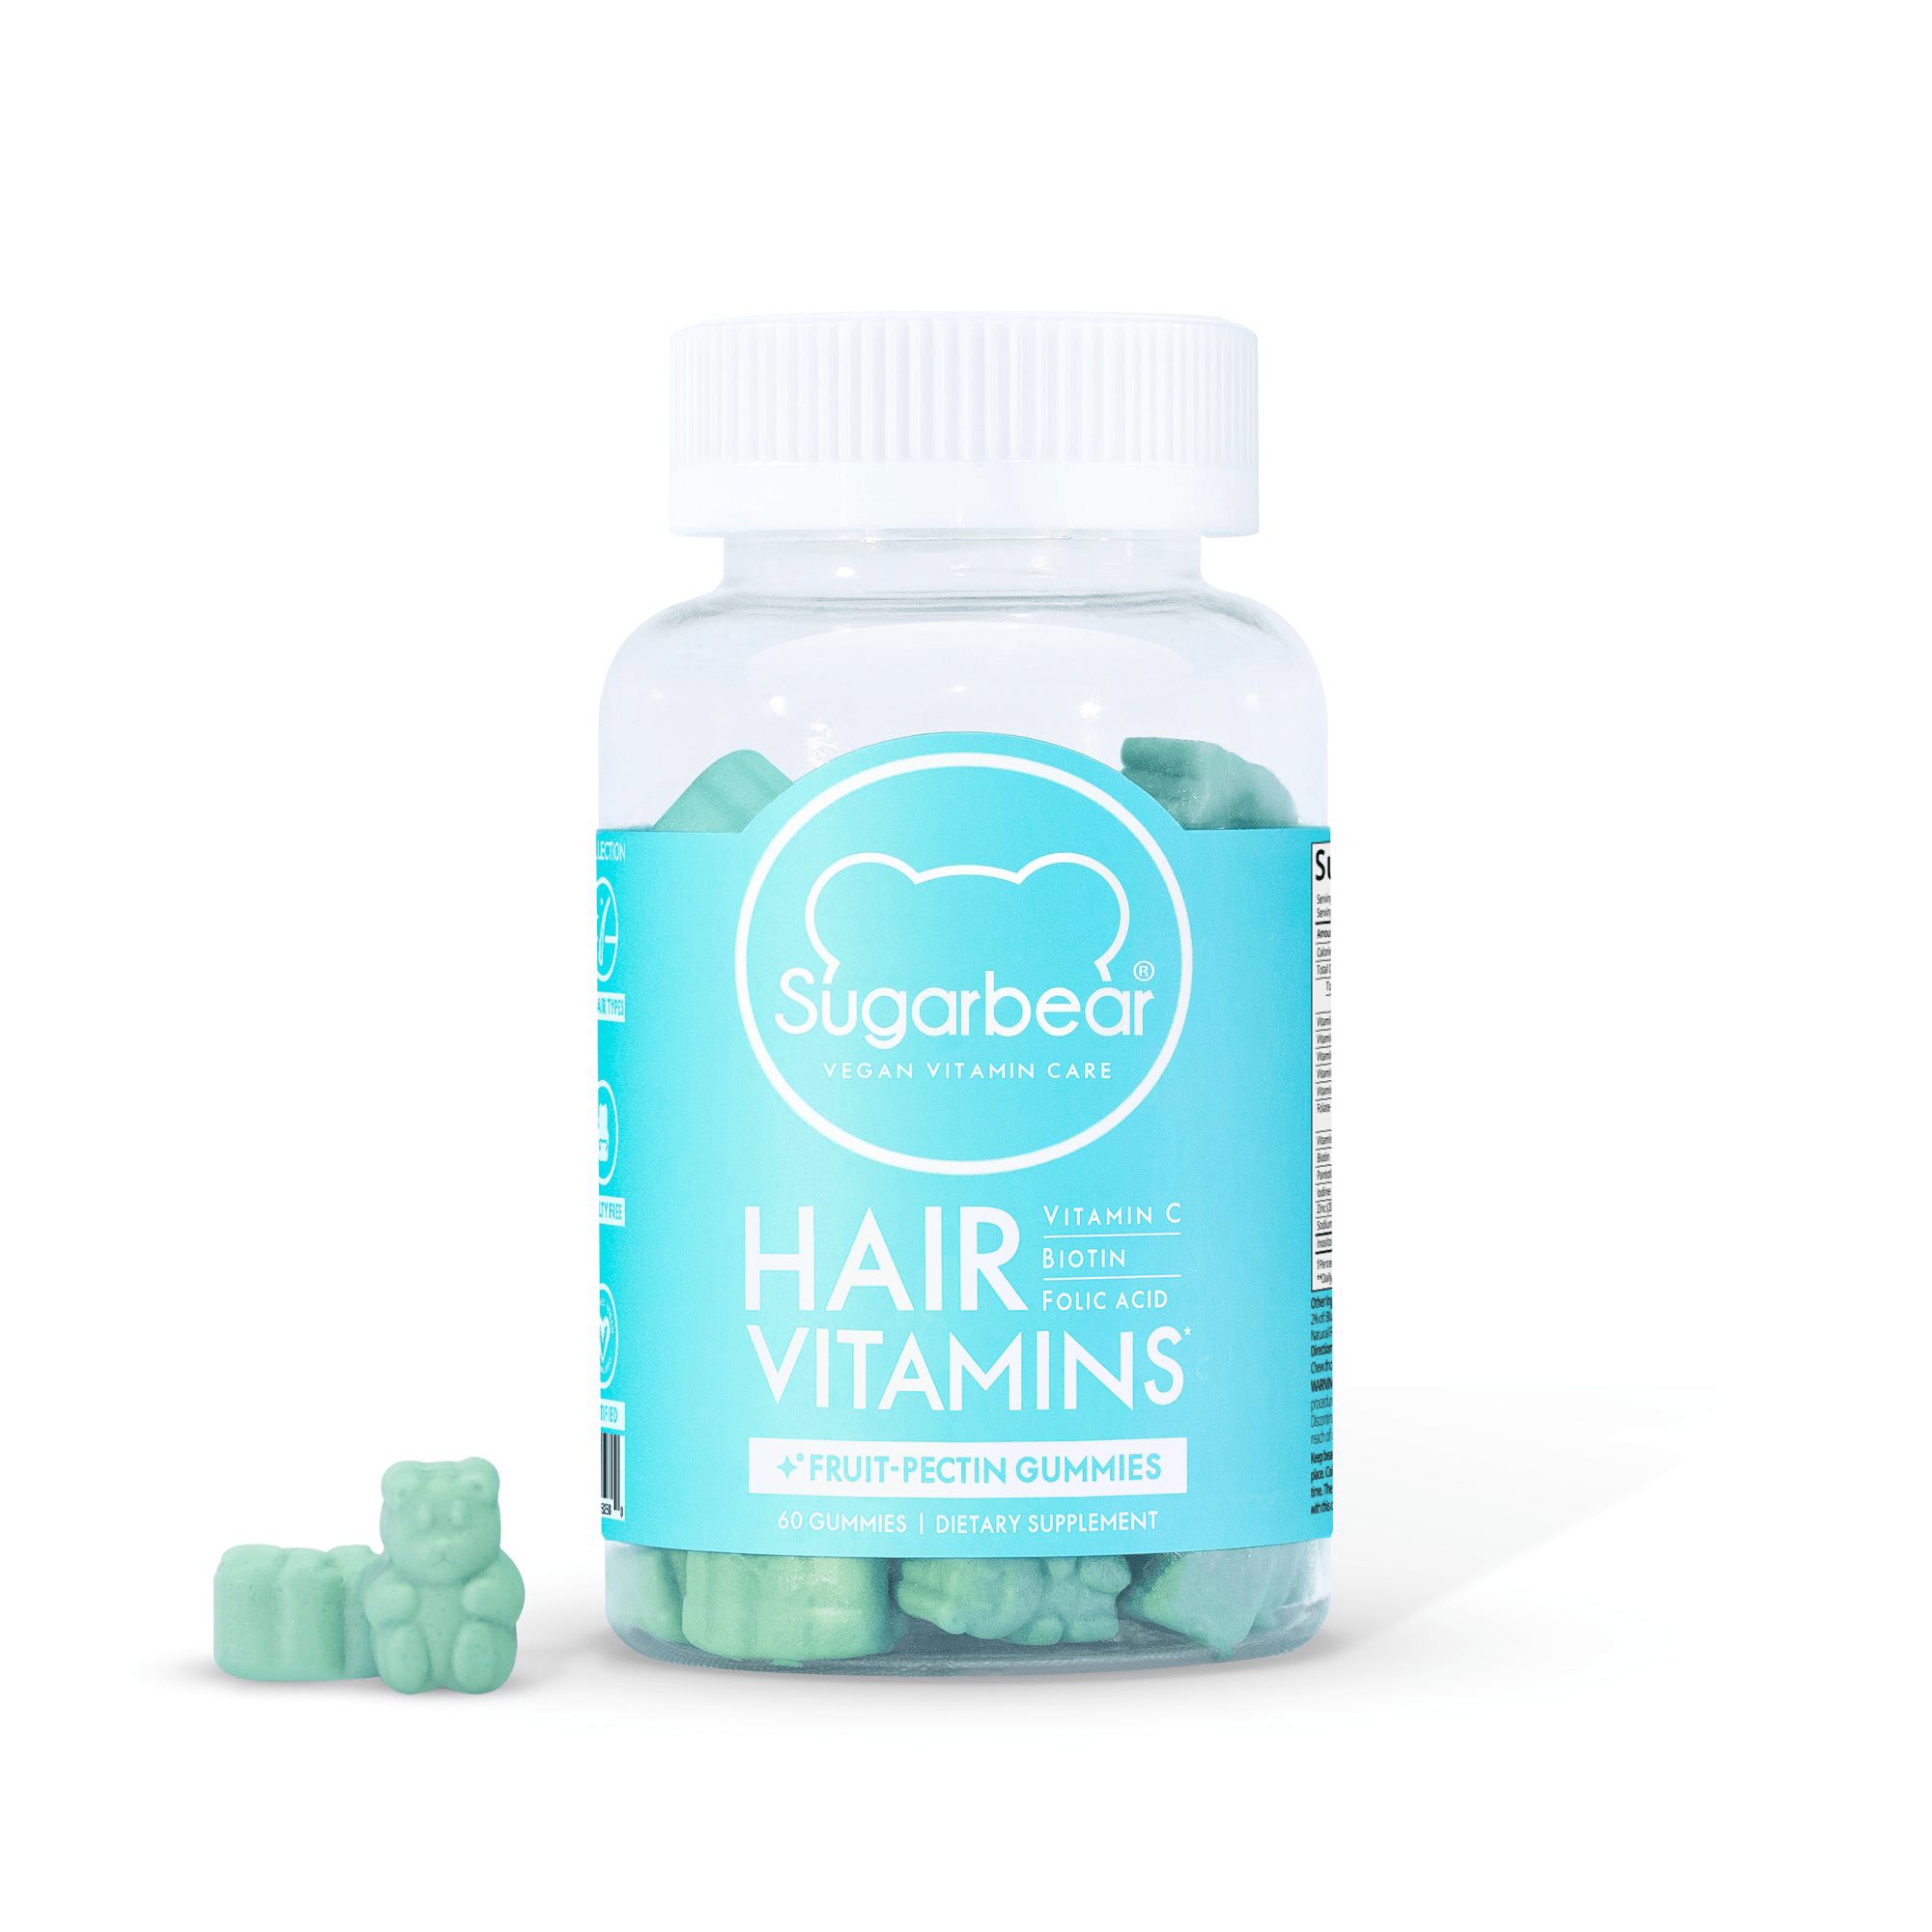 Sugarbear Hair Vitamin Gummies - 1 Month – Sugarbear® Vegan Vitamin Care